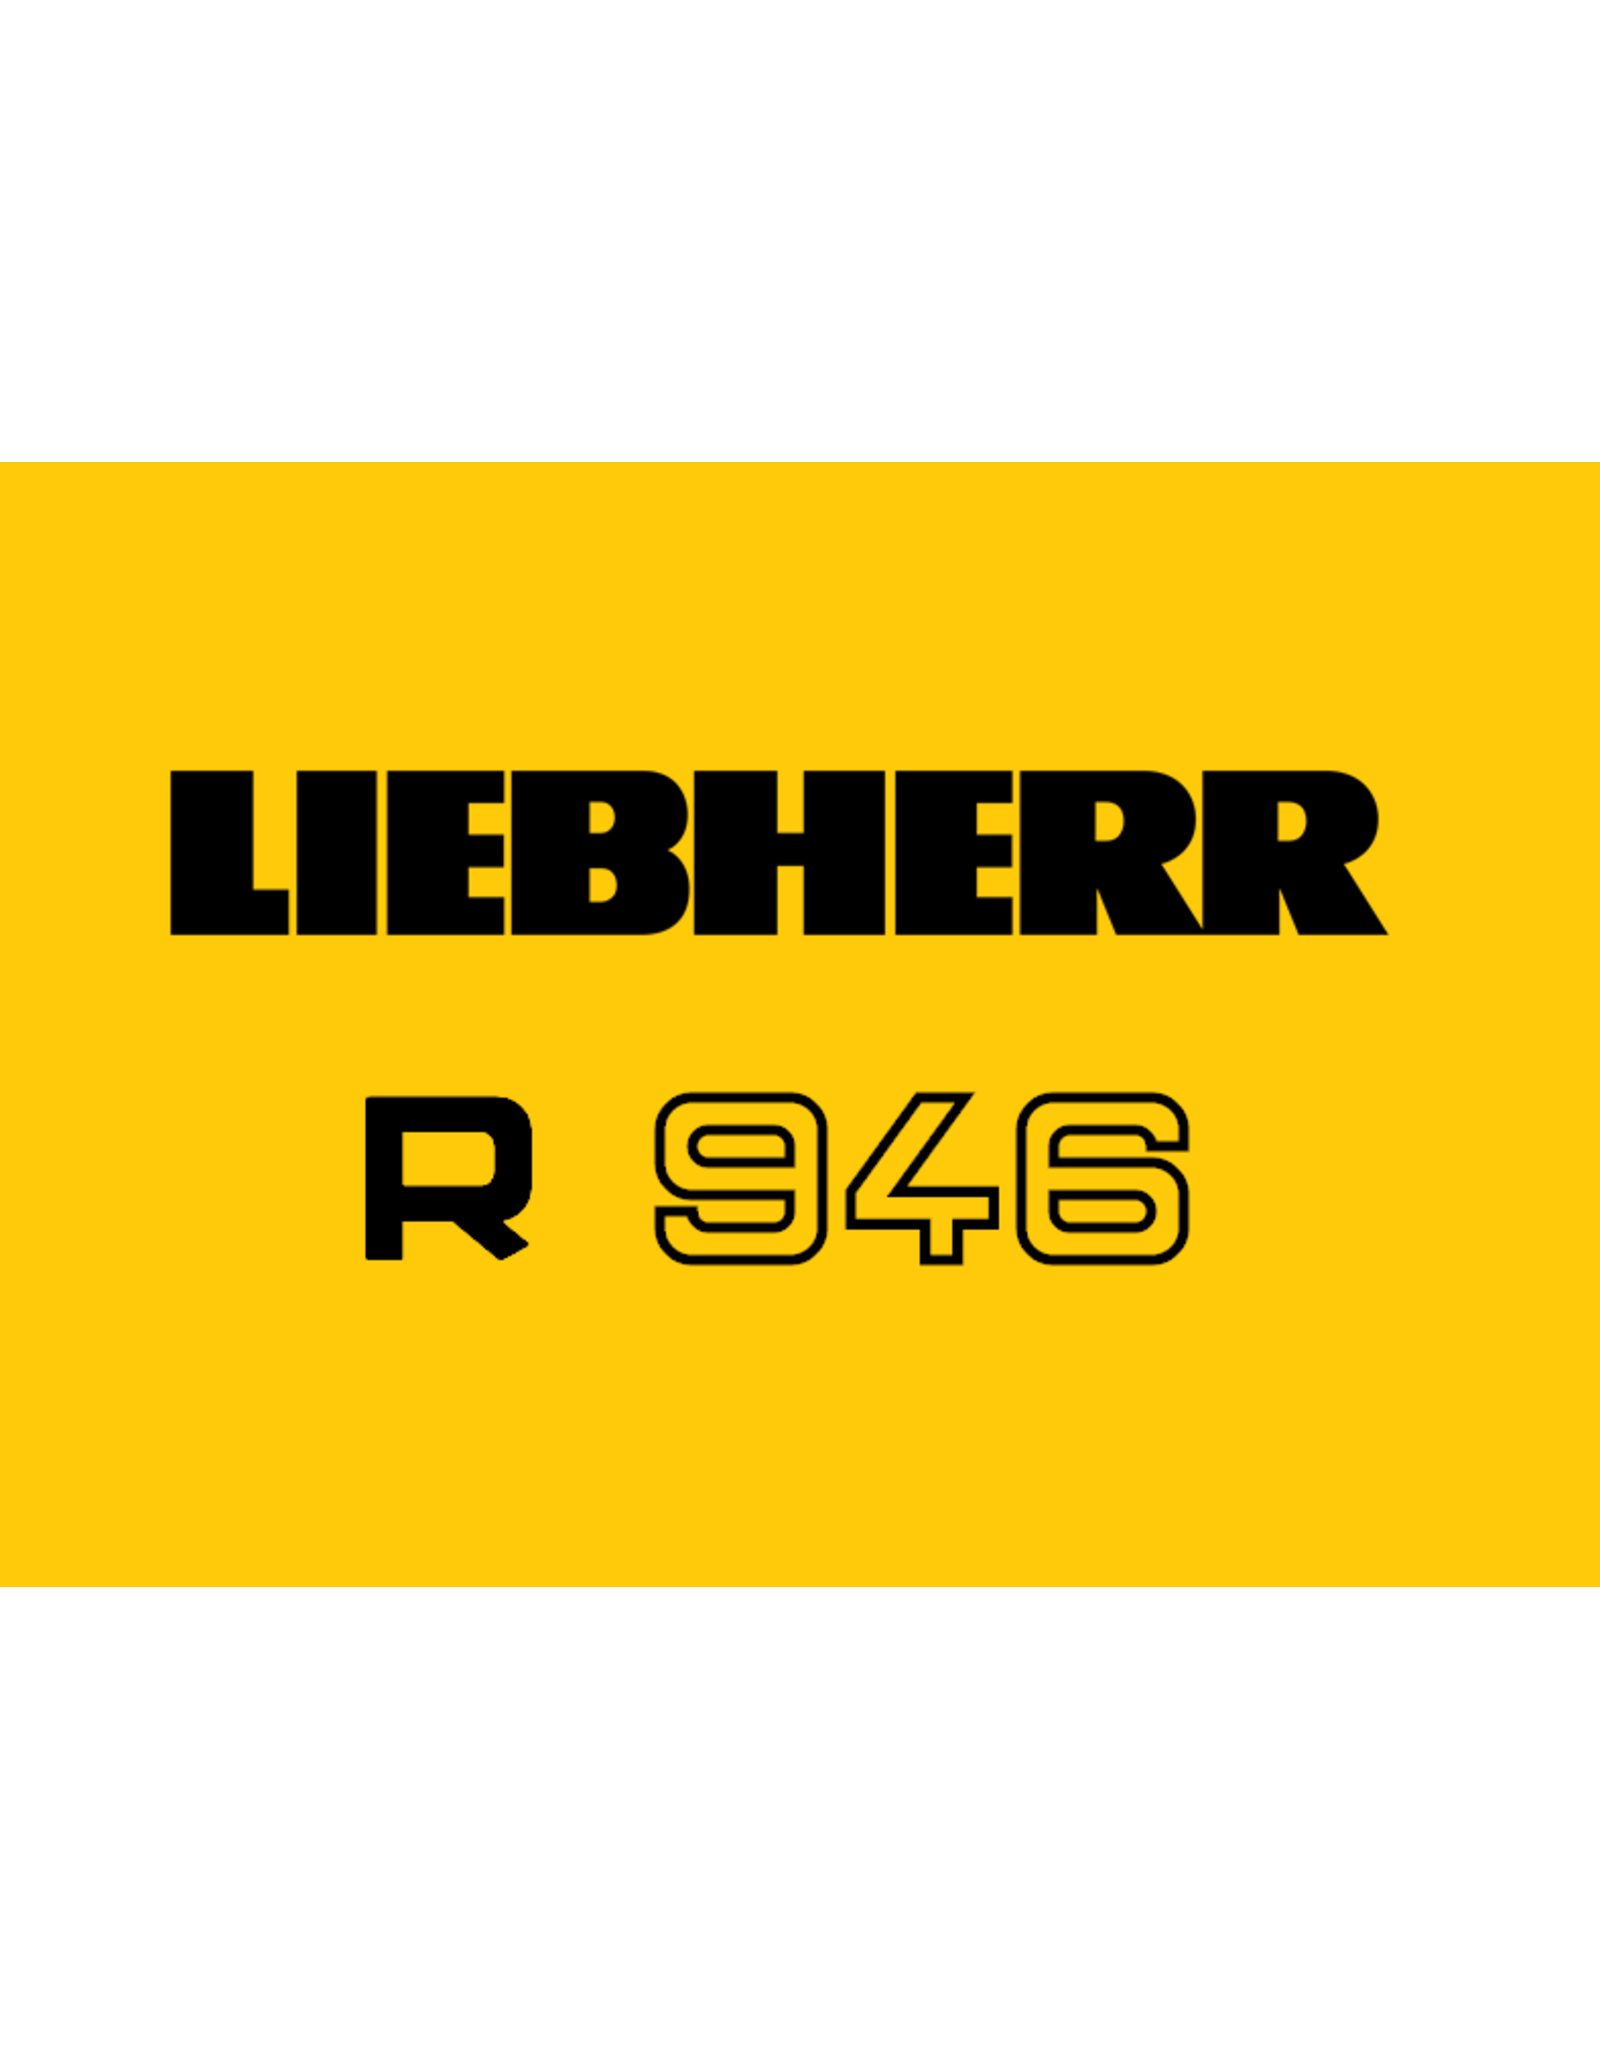 Echle Hartstahl GmbH FOPS für Liebherr R 946